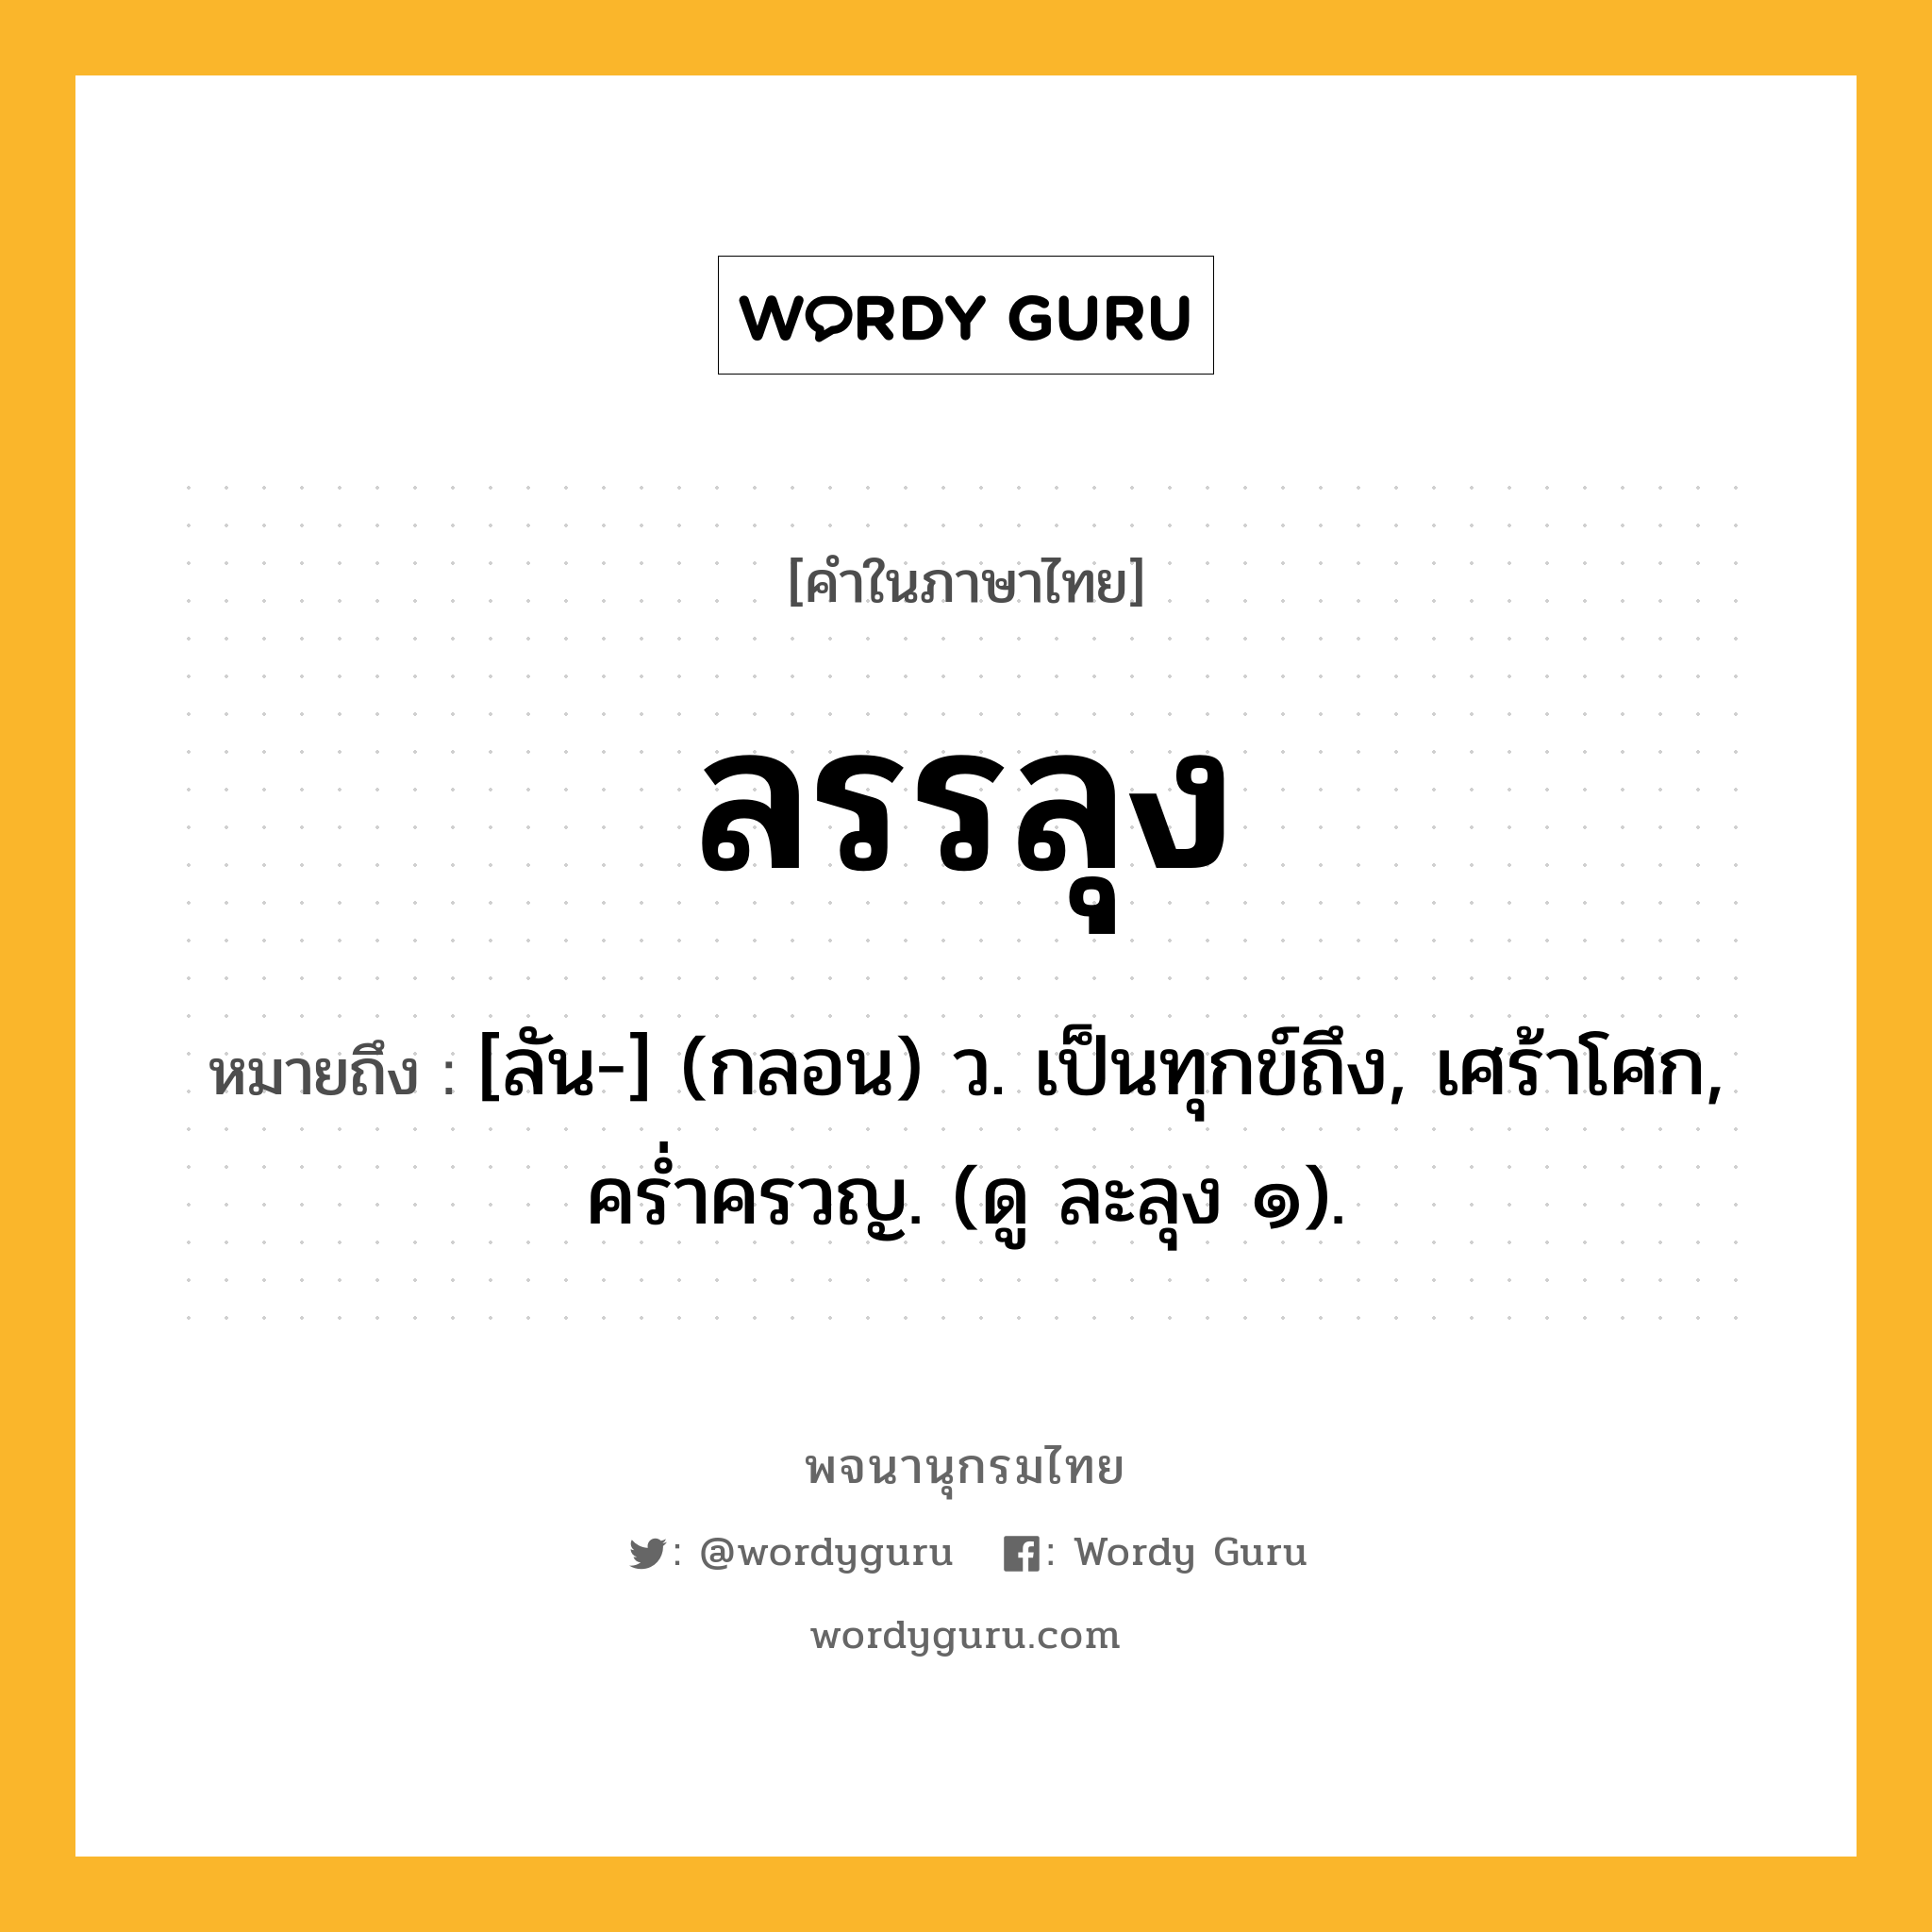 ลรรลุง หมายถึงอะไร?, คำในภาษาไทย ลรรลุง หมายถึง [ลัน-] (กลอน) ว. เป็นทุกข์ถึง, เศร้าโศก, ครํ่าครวญ. (ดู ละลุง ๑).